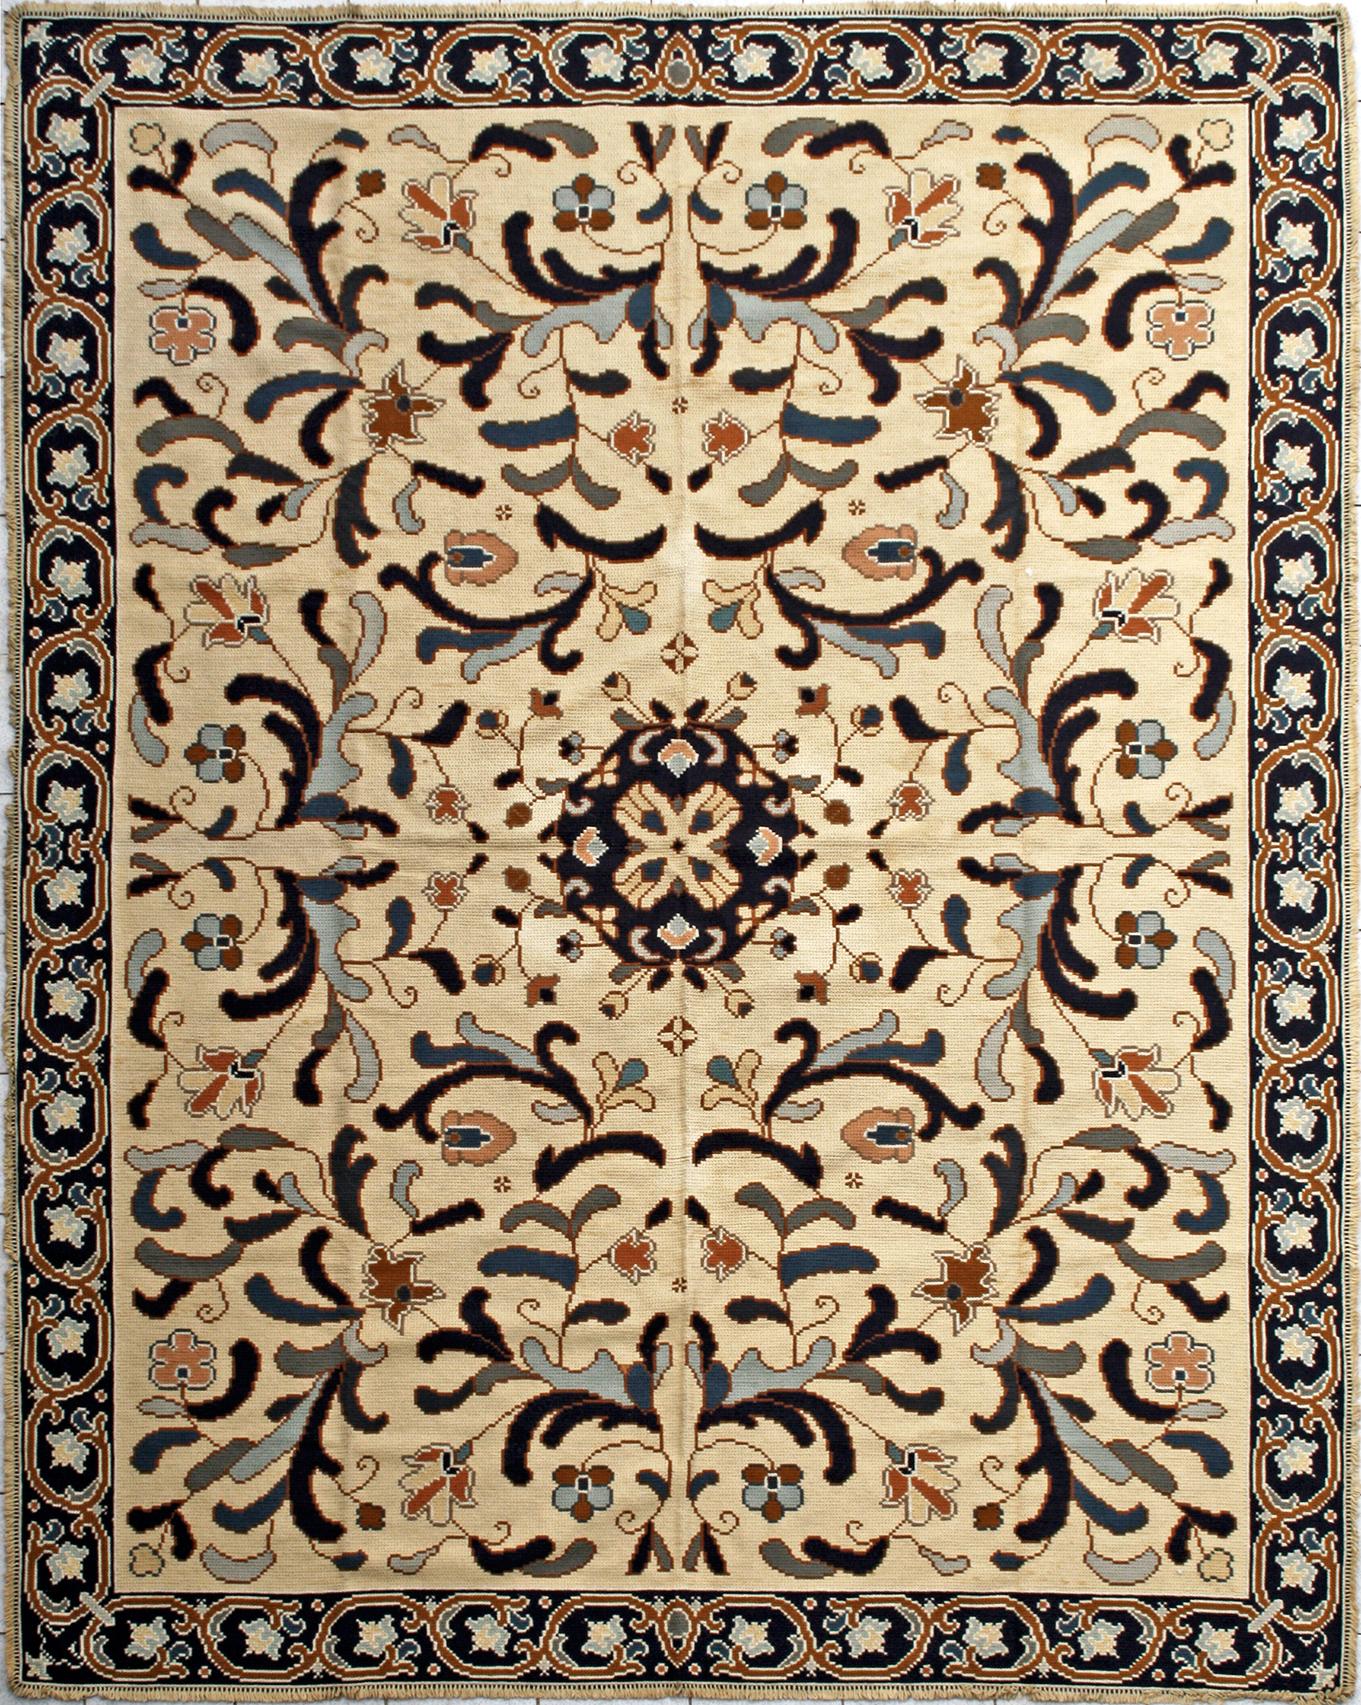 Schöner portugiesischer Teppich aus Arraiolos, mit dekorativem Muster und hellen Farben in Creme und Blau, komplett handgestickt mit portugiesischer Nadelspitze, mit Wolle auf Juteunterlage. Die Arbeit von zwei Stickerinnen dauert ein ganzes Jahr,